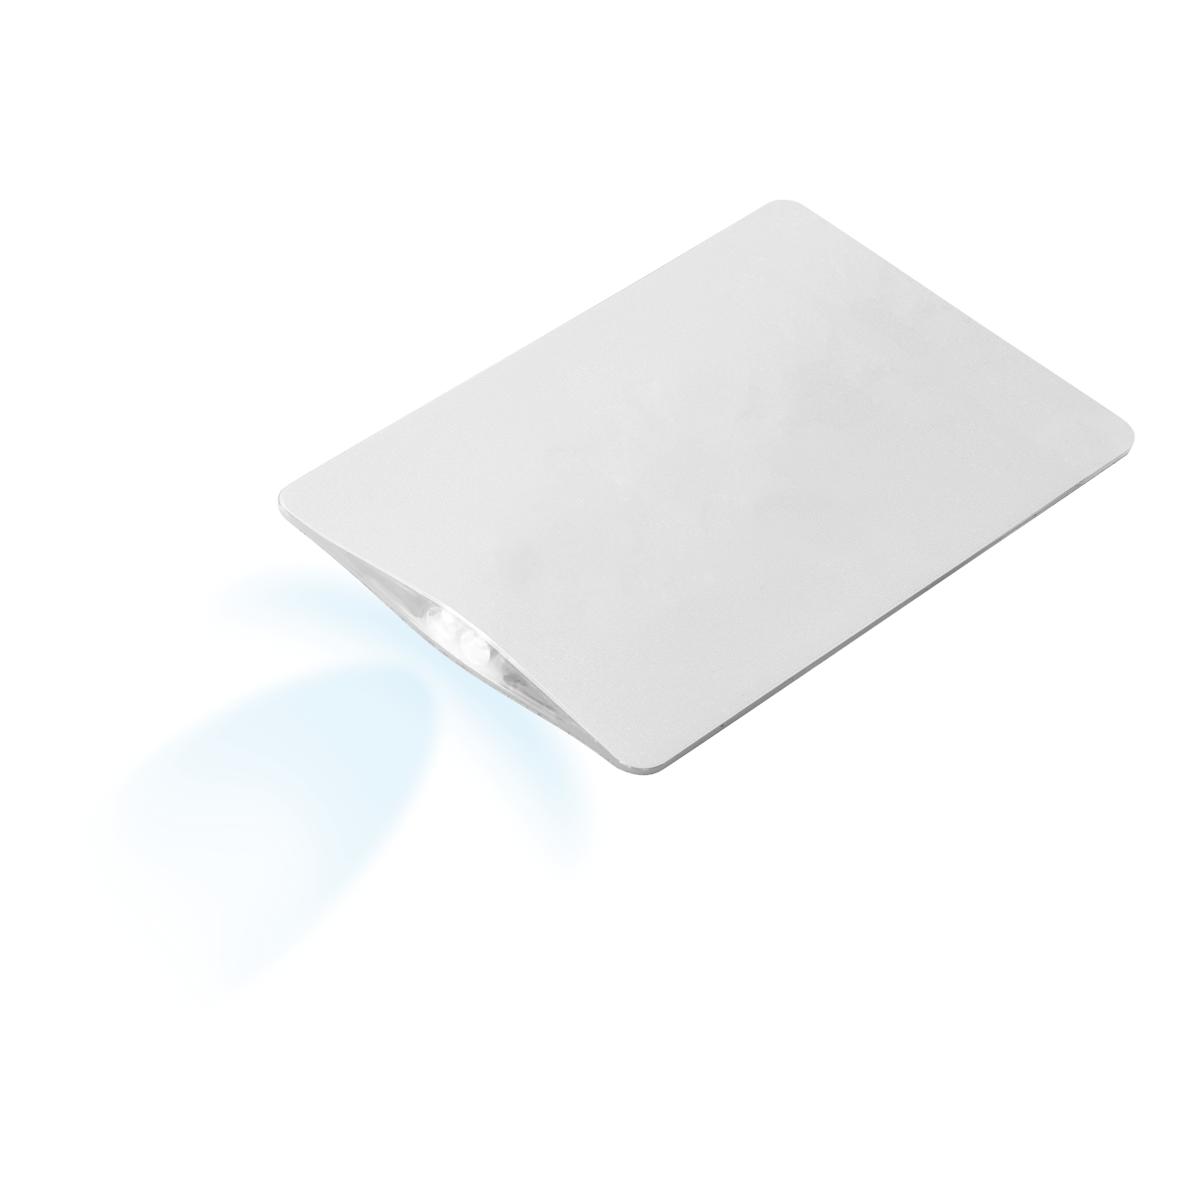 LED-Bankkarten-Taschenlampe - Kitzbühel